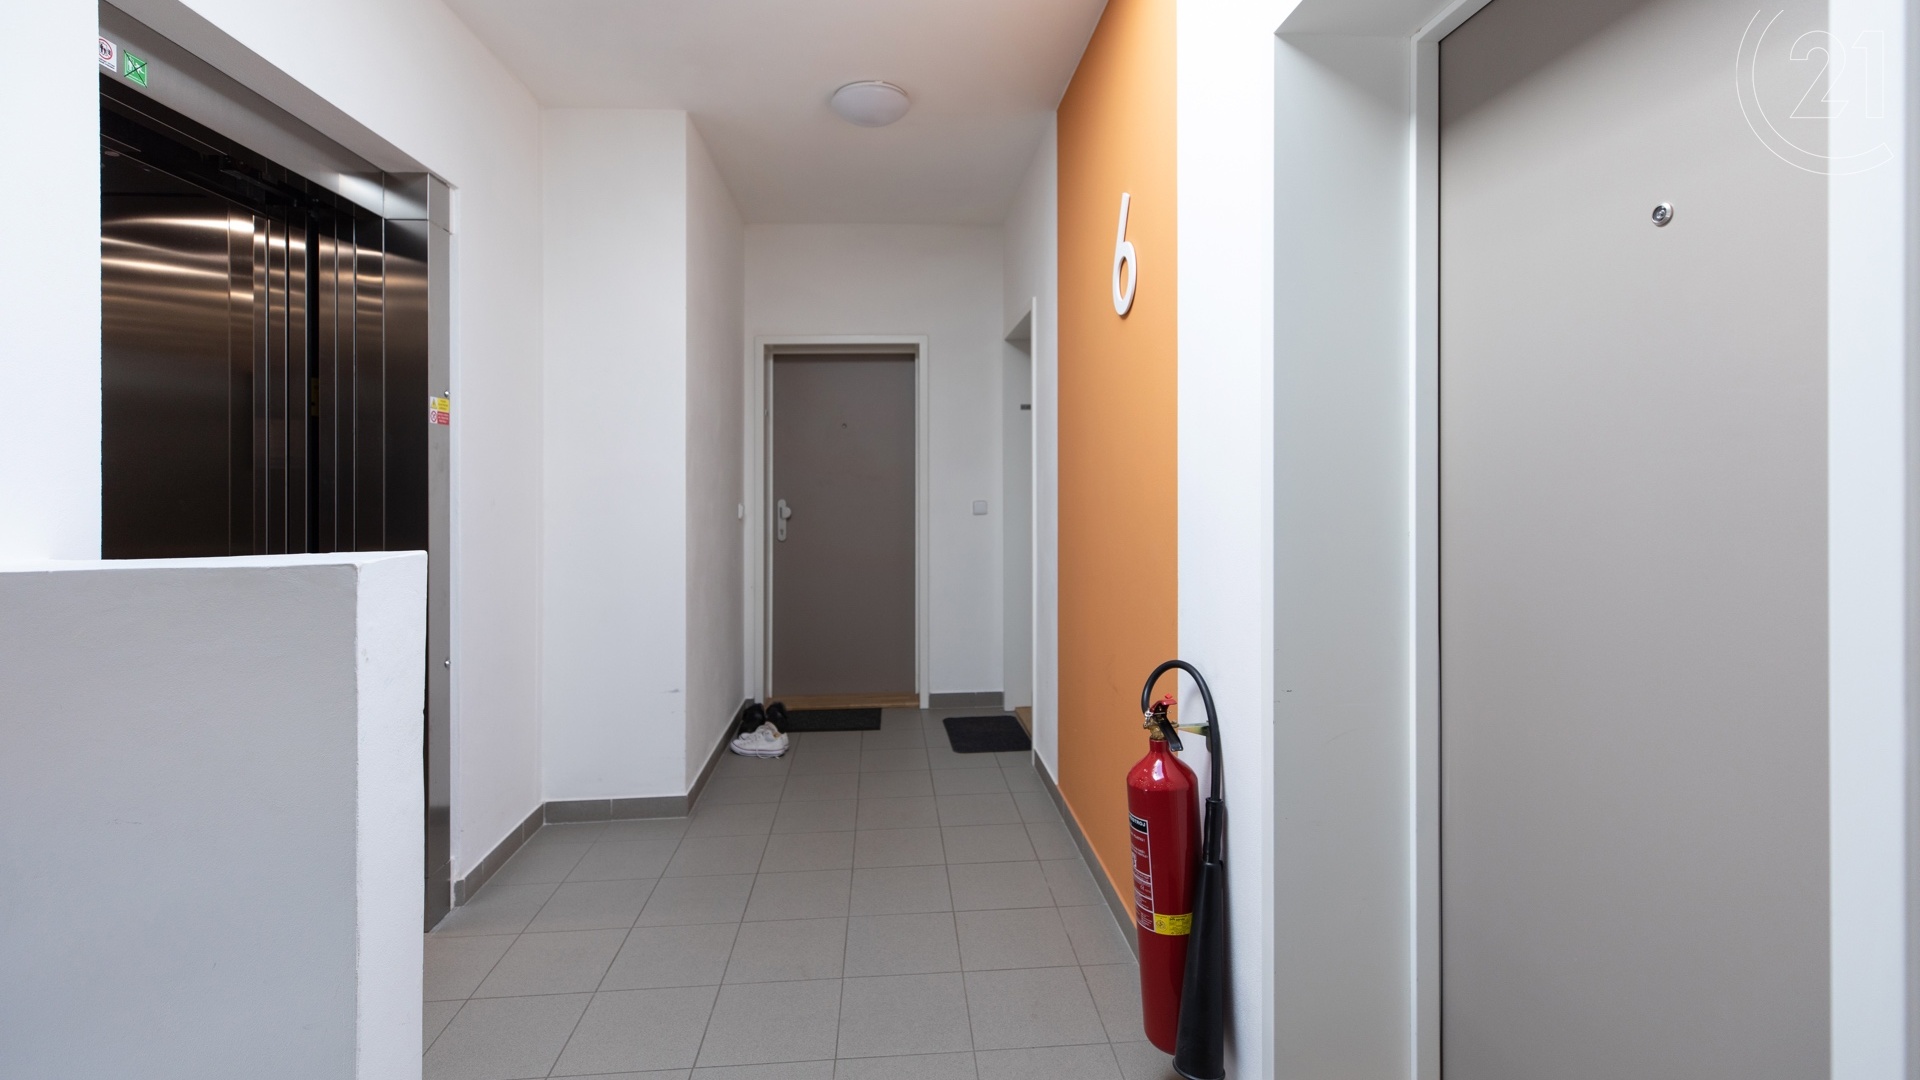 Prodej bytu 1+kk s terasou, sklepem a parkovacím stáním, 31 m², Praha - Uhříněves